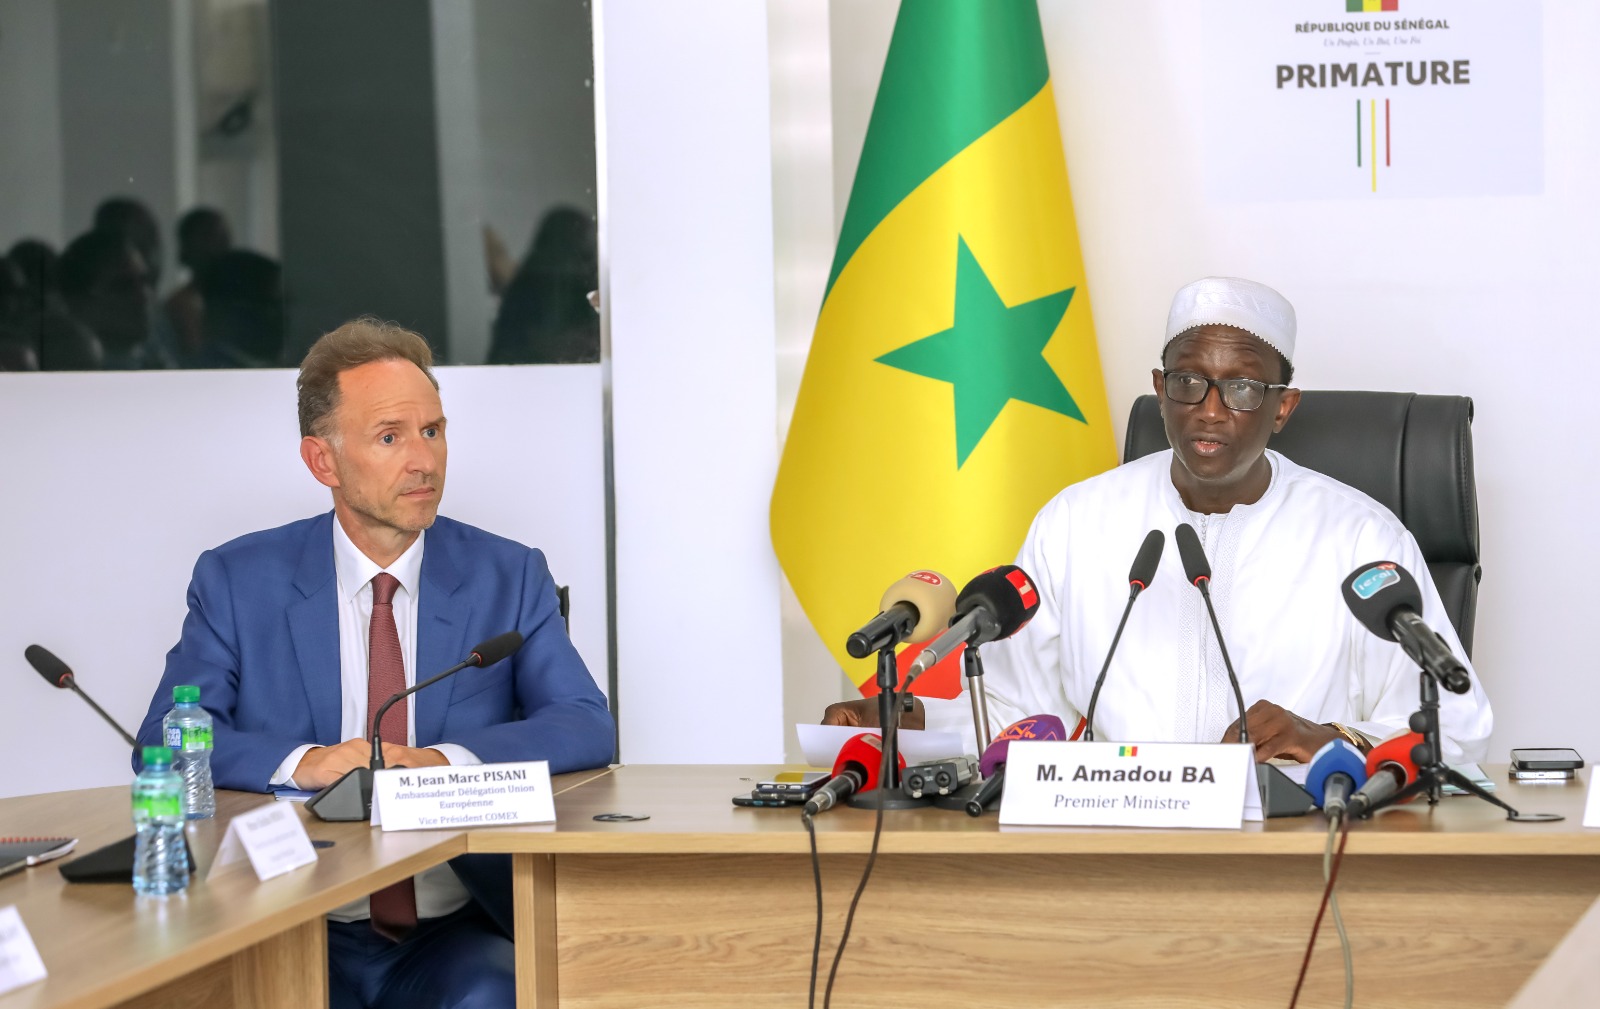 Premier Ministre Amadou Ba et Jean-Marc Pisani